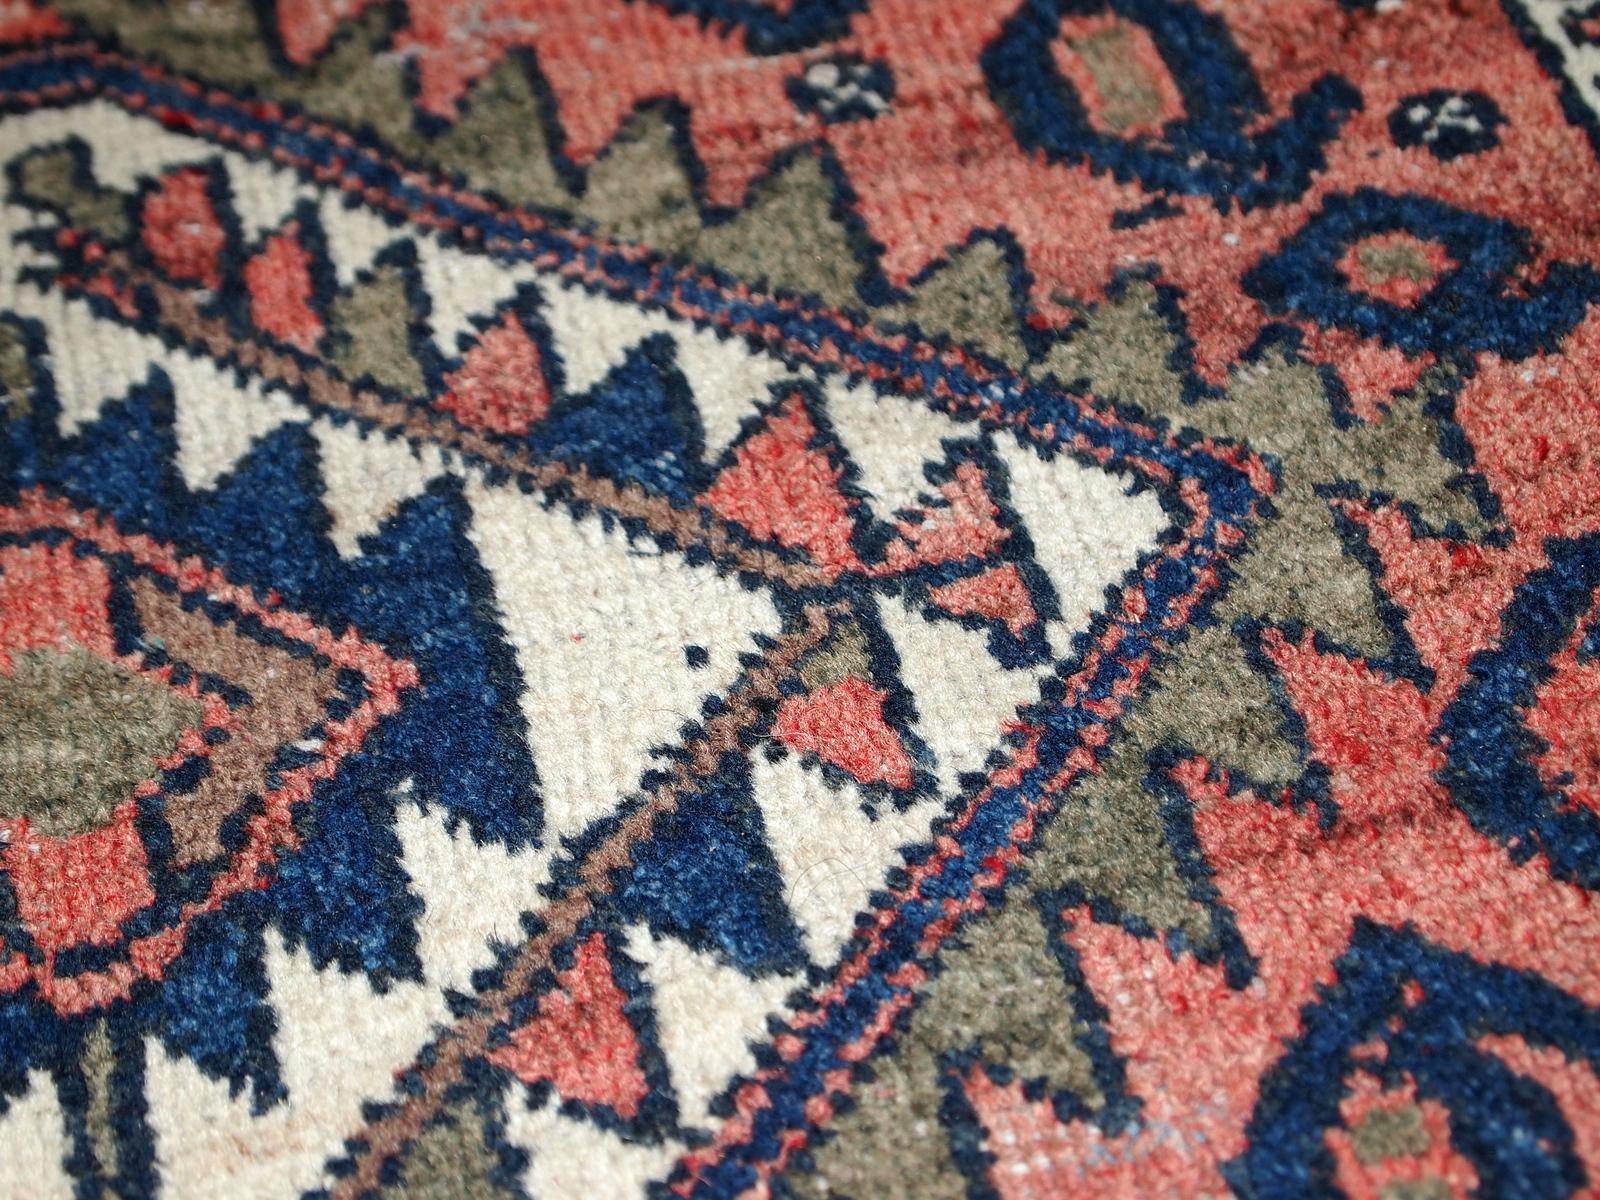 Handgefertigtes kurdisches Taschengesicht im Originalzustand, es hat einige Altersspuren. Der Teppich stammt vom Anfang des 20. Jahrhunderts.

zustand: original, etwas niedriger Flor, 

-ca. 1930er Jahre,

-Größe: 1,8' x 1,9' (55cm x